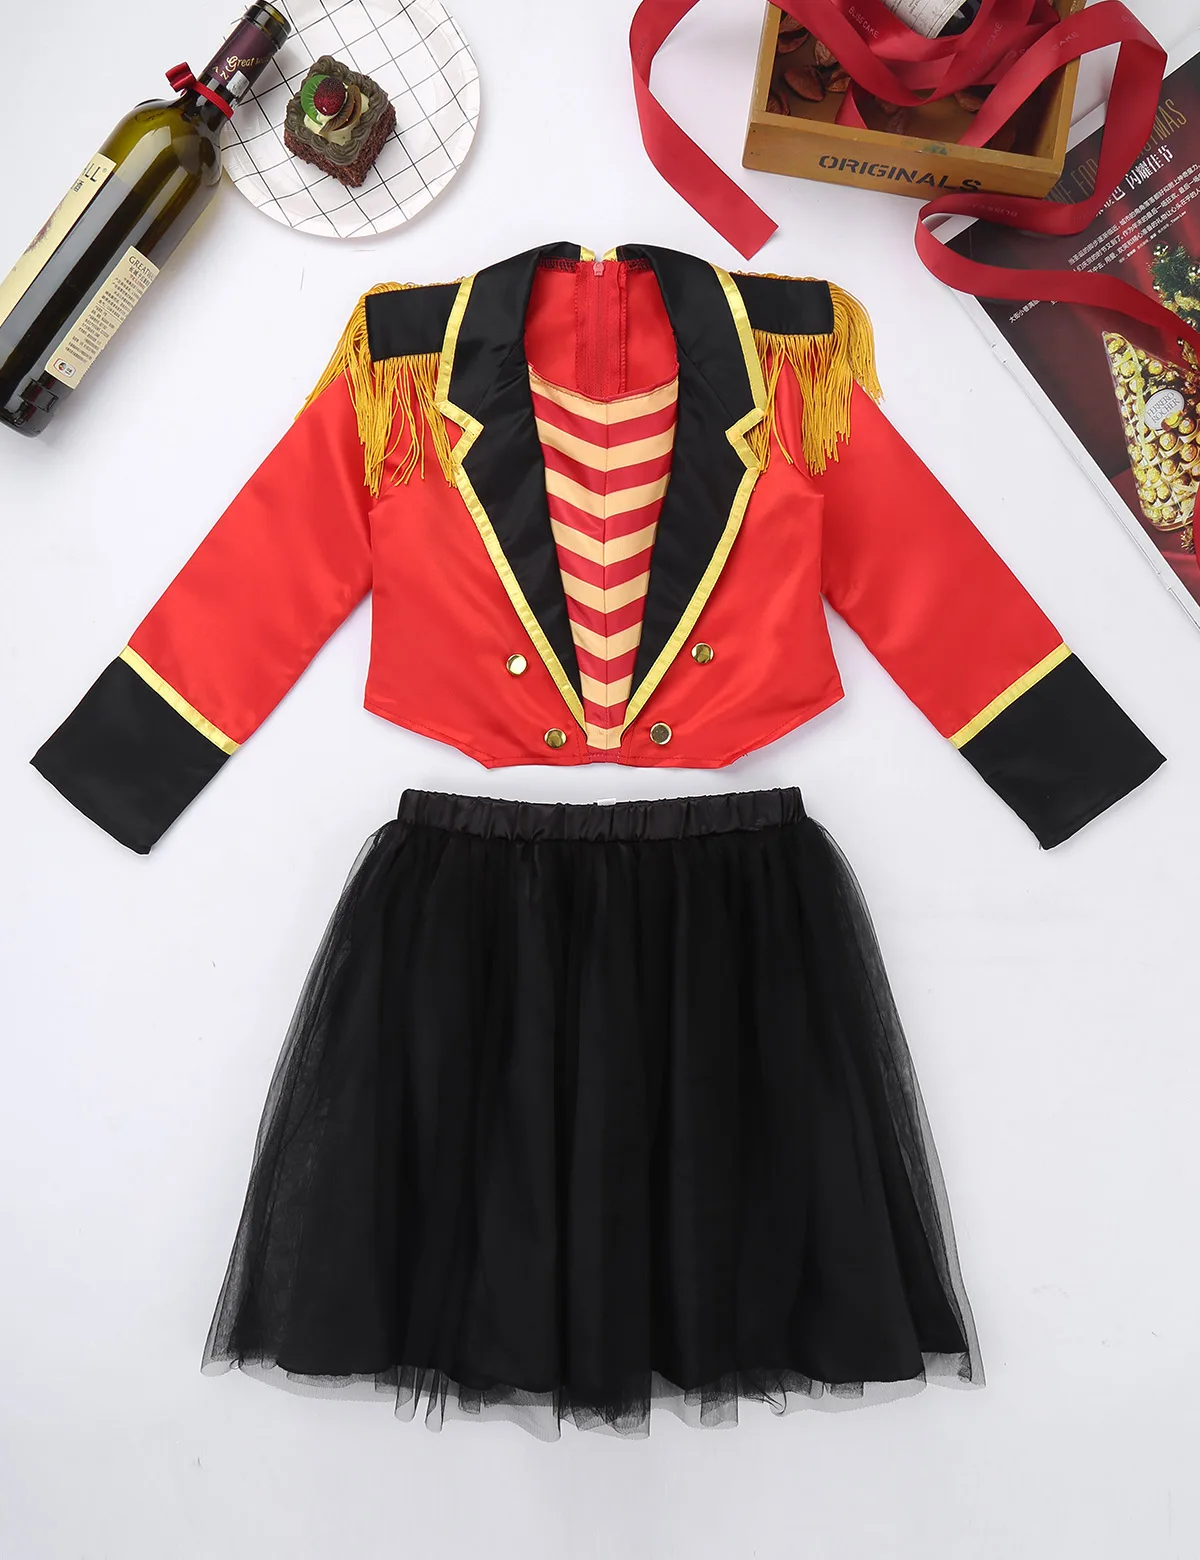 Детский костюм для ролевых игр в стиле цирка, рингмейстера, Хэллоуина, для девочек детские нарядные вечерние костюмы, куртка и юбка-пачка